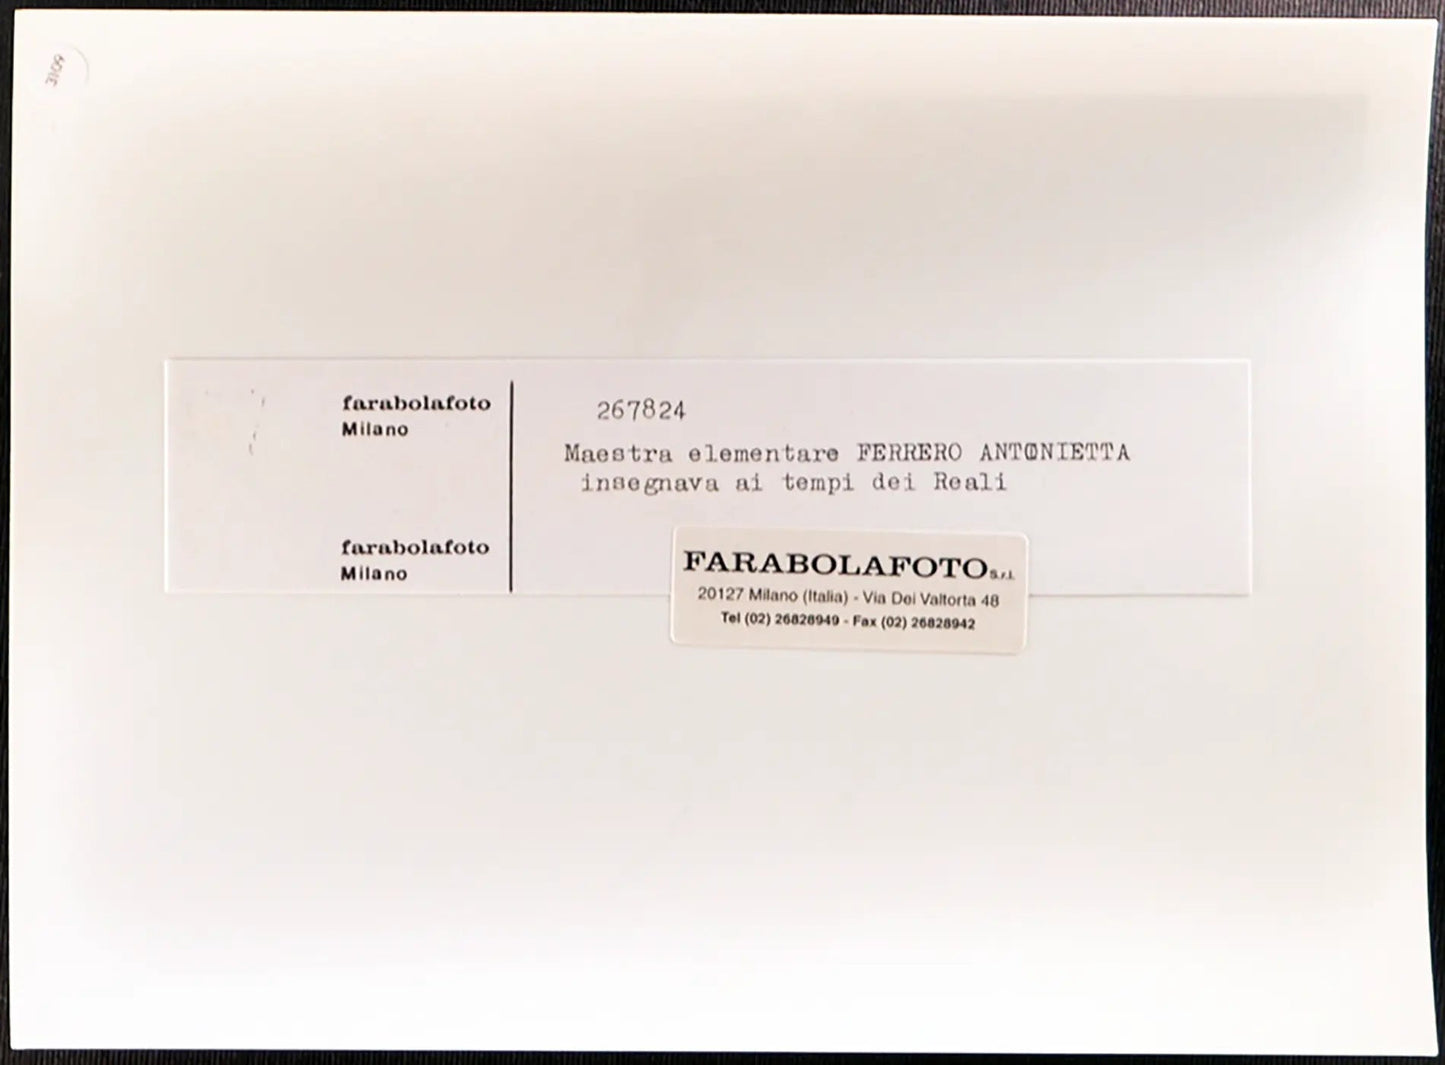 Antonietta Ferrero, maestra anni 50 Ft 3109 - Stampa 24x18 cm - Farabola Stampa ai sali d'argento (anni 90)